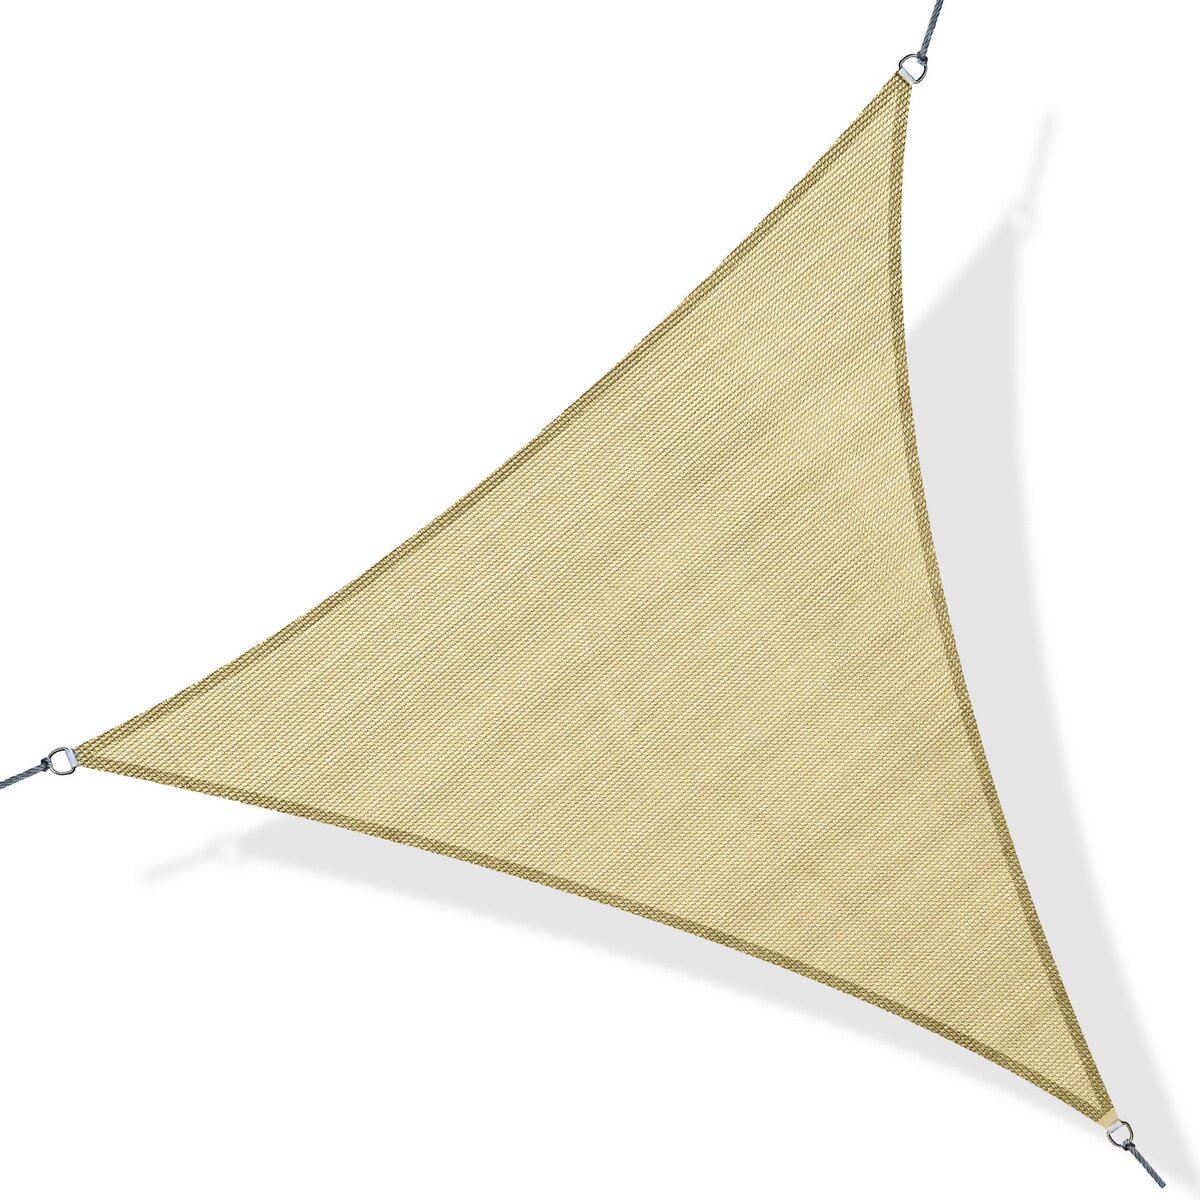 OUTSUNNY Voile d'ombrage triangulaire grande taille 4 x 4 x 4 m polyéthylène haute densité résistant aux UV coloris sable